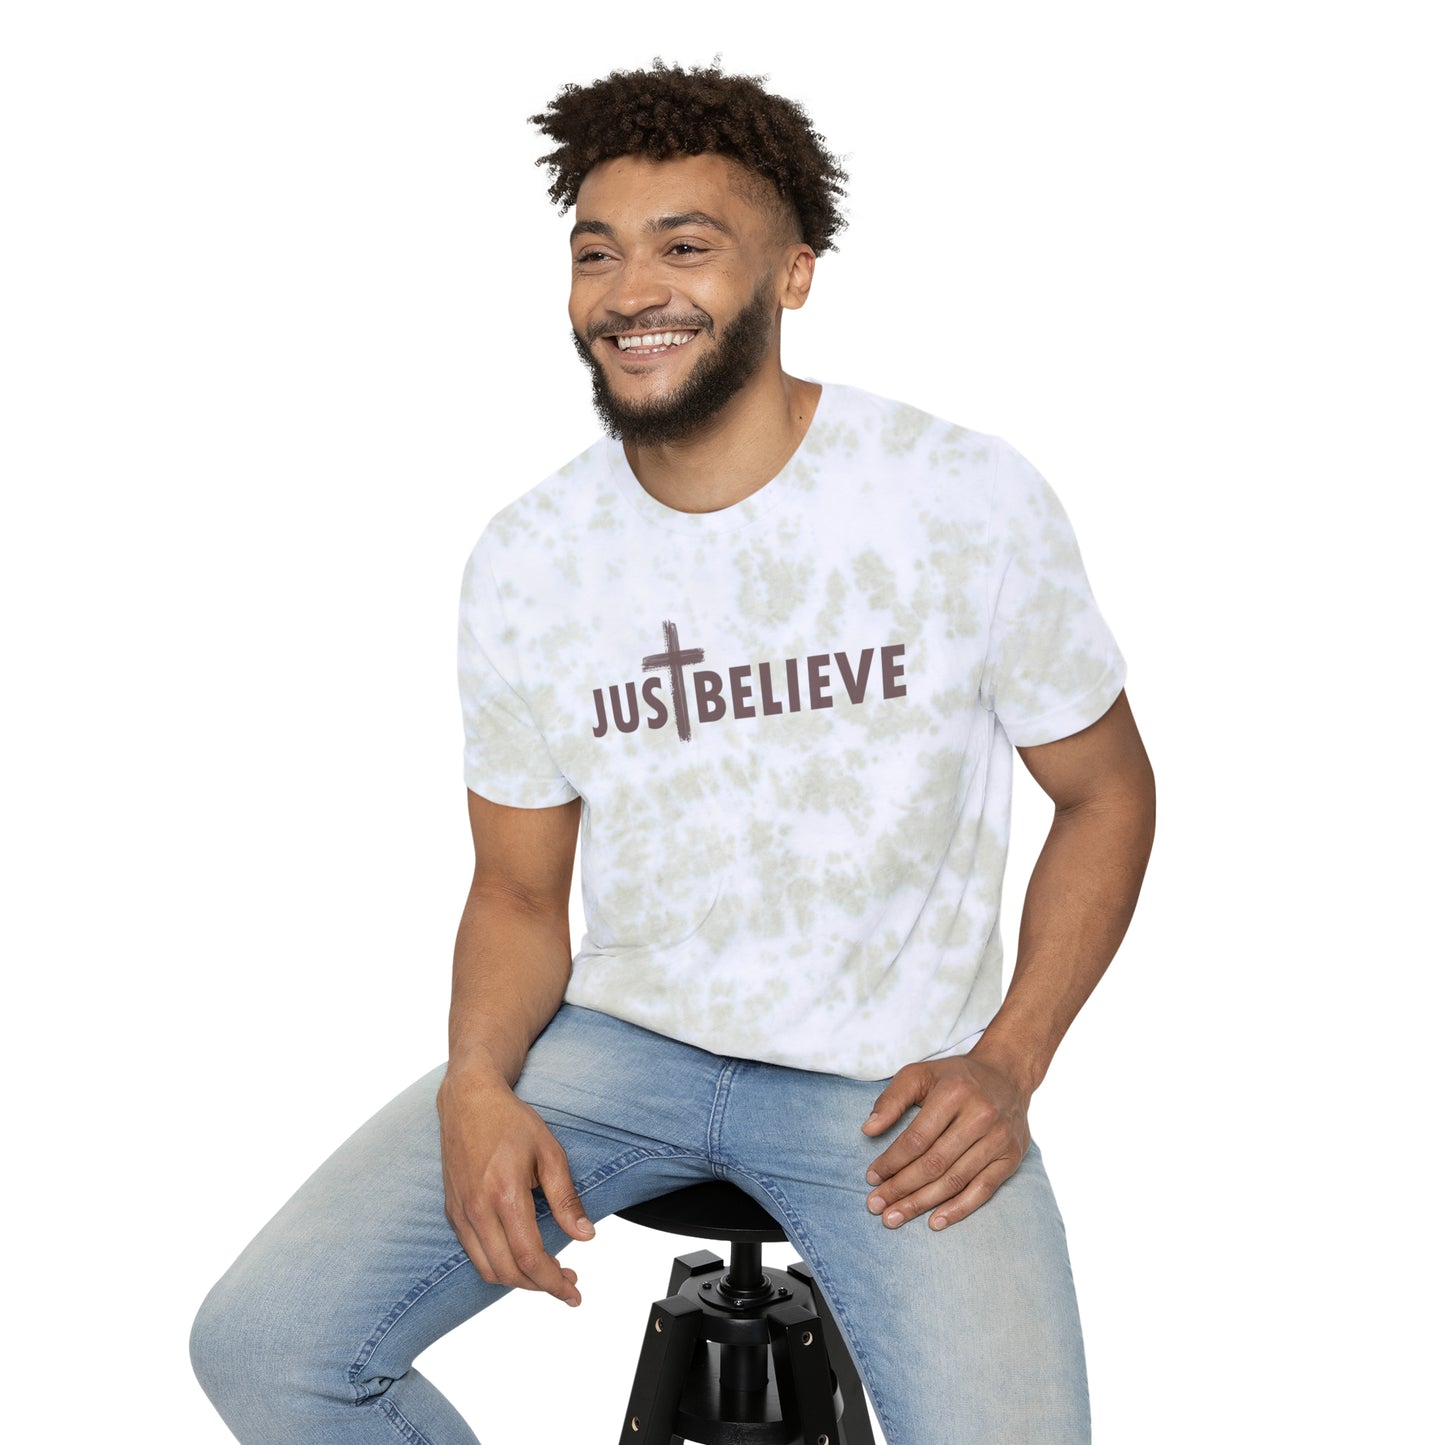 Just Believe - Christian T shirt, Christian Message